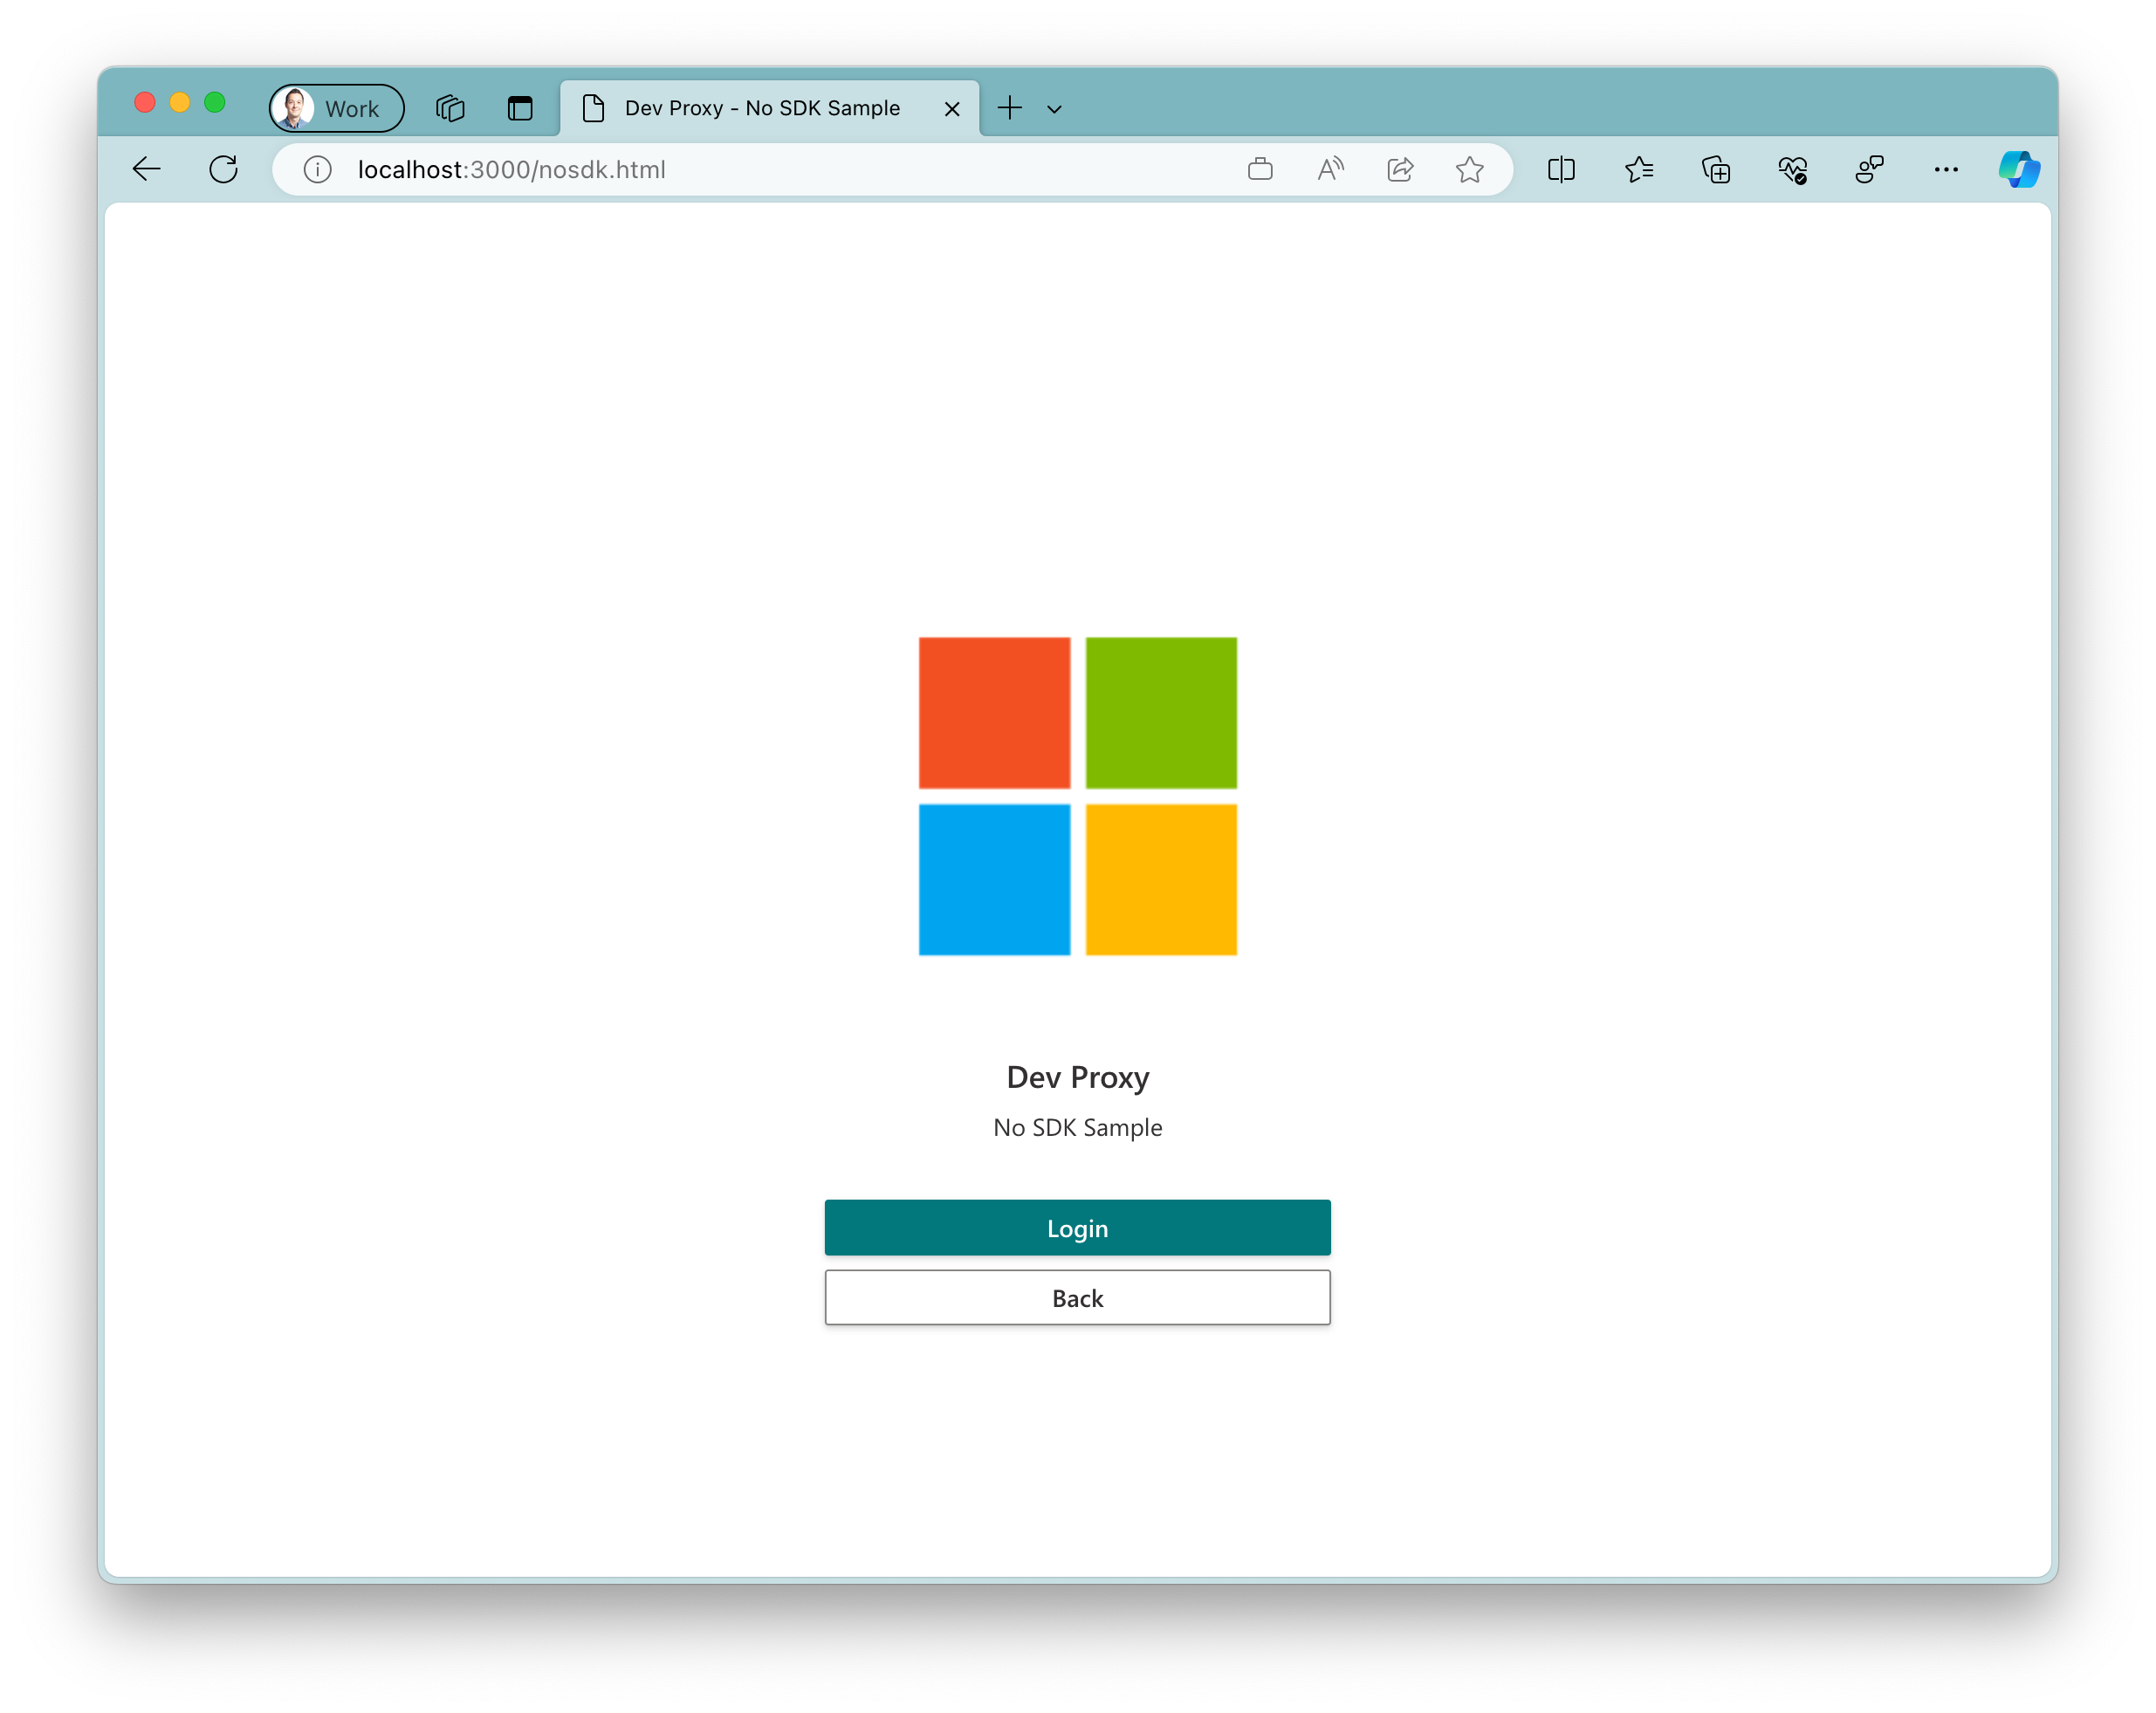 Captura de ecrã da aplicação de exemplo em execução no browser Microsoft Edge no Windows 11. A aplicação mostra um logótipo da Microsoft grande com dois botões abaixo. Um botão primário com o texto 